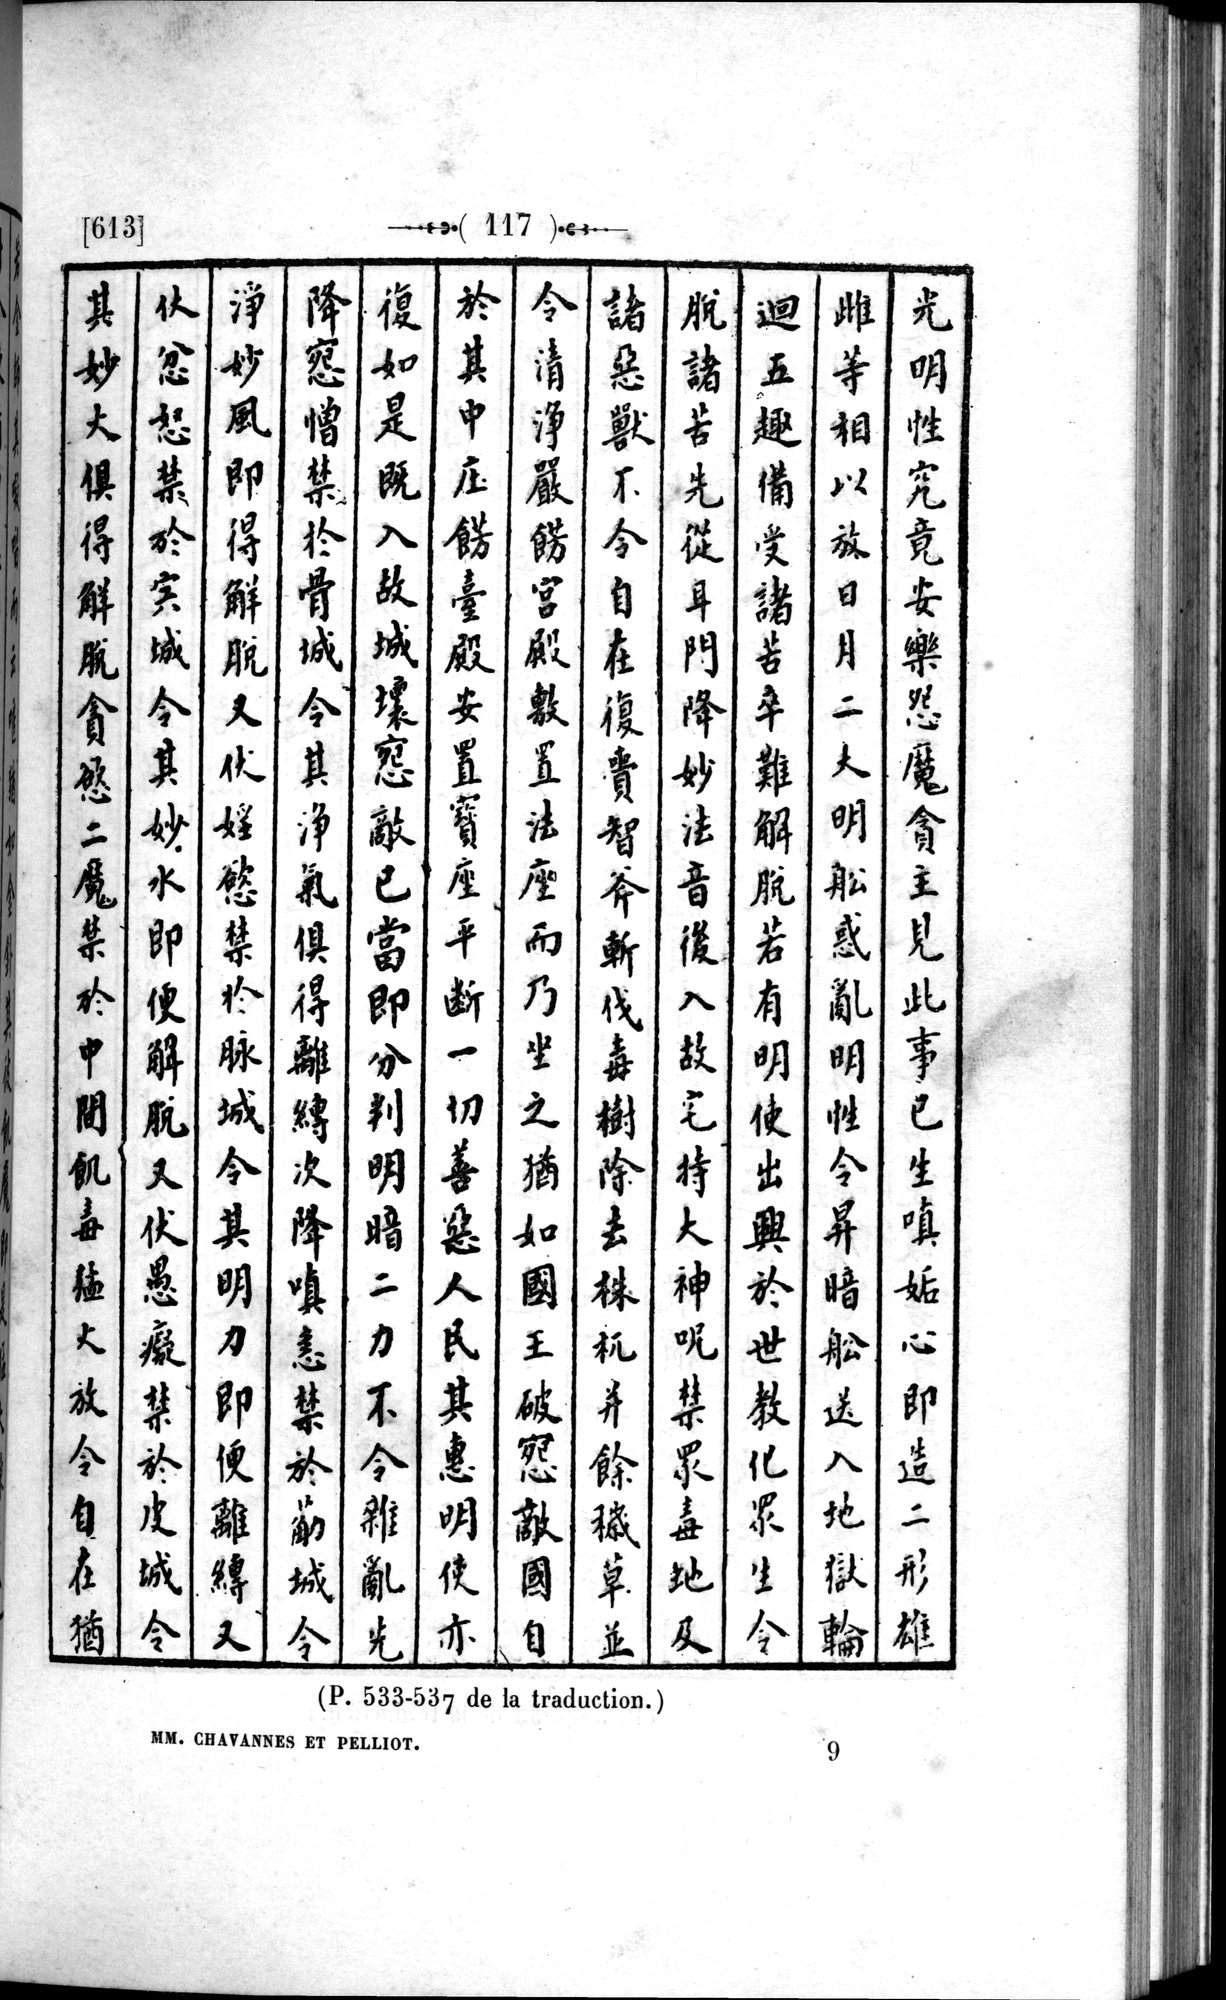 Un traité manichéen retrouvé en Chine : vol.1 / 127 ページ（白黒高解像度画像）